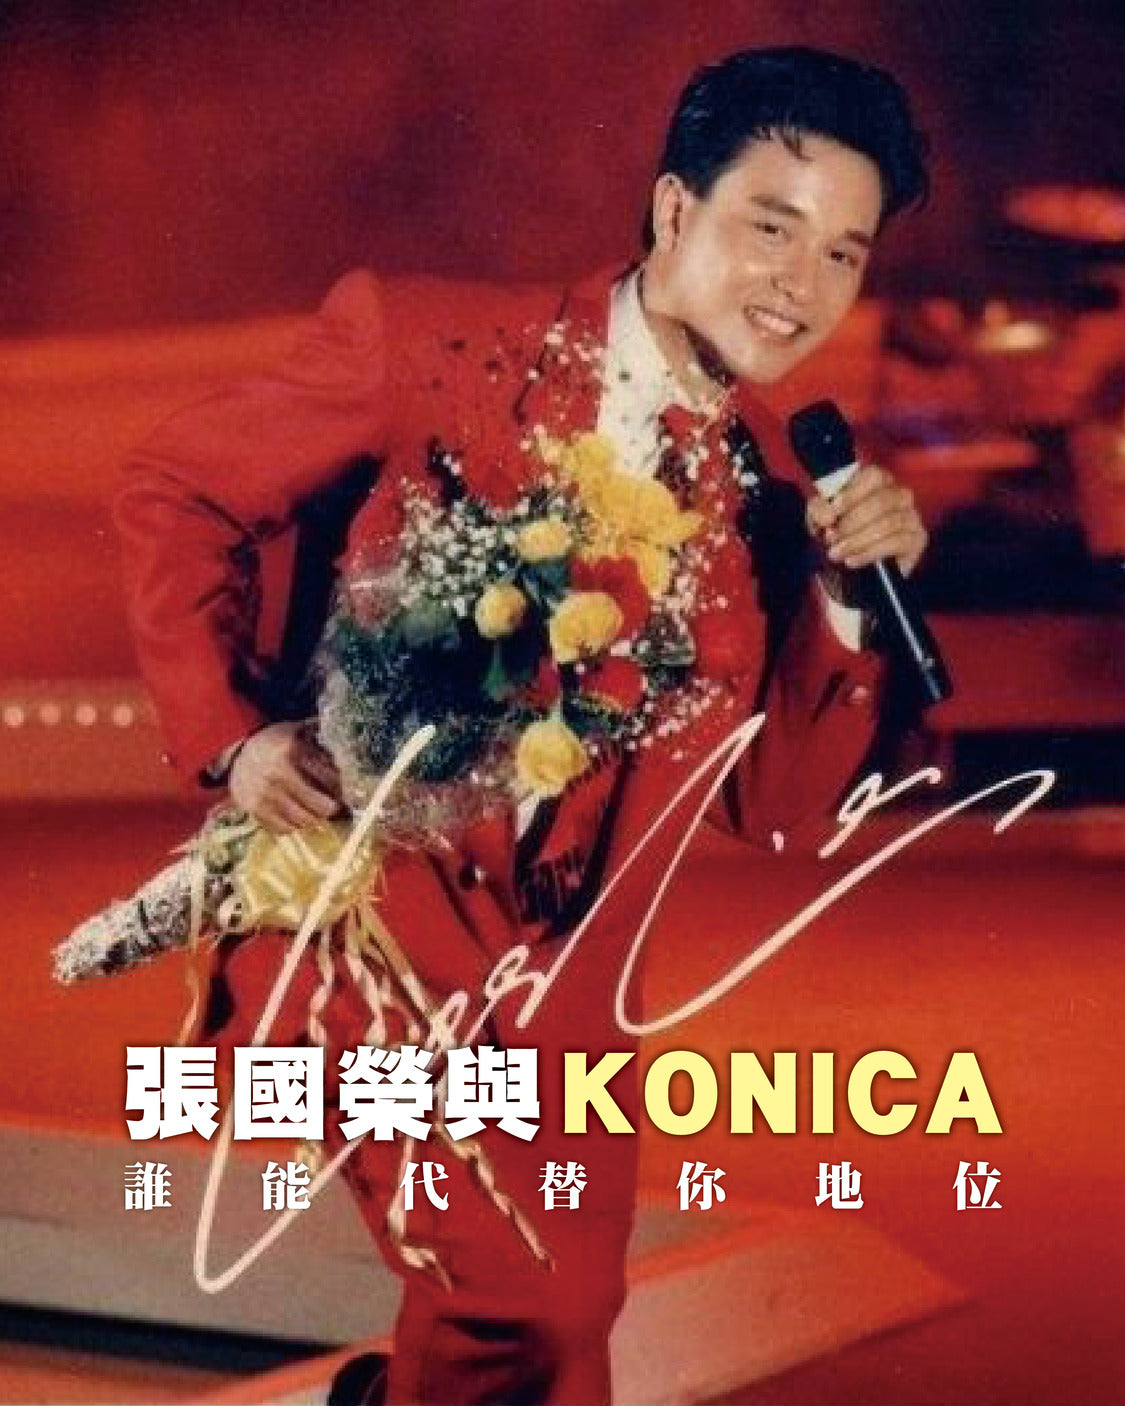 【名人銘機】張國榮67歲冥壽 一生僅代言4個品牌 Konica為唯一菲林品牌